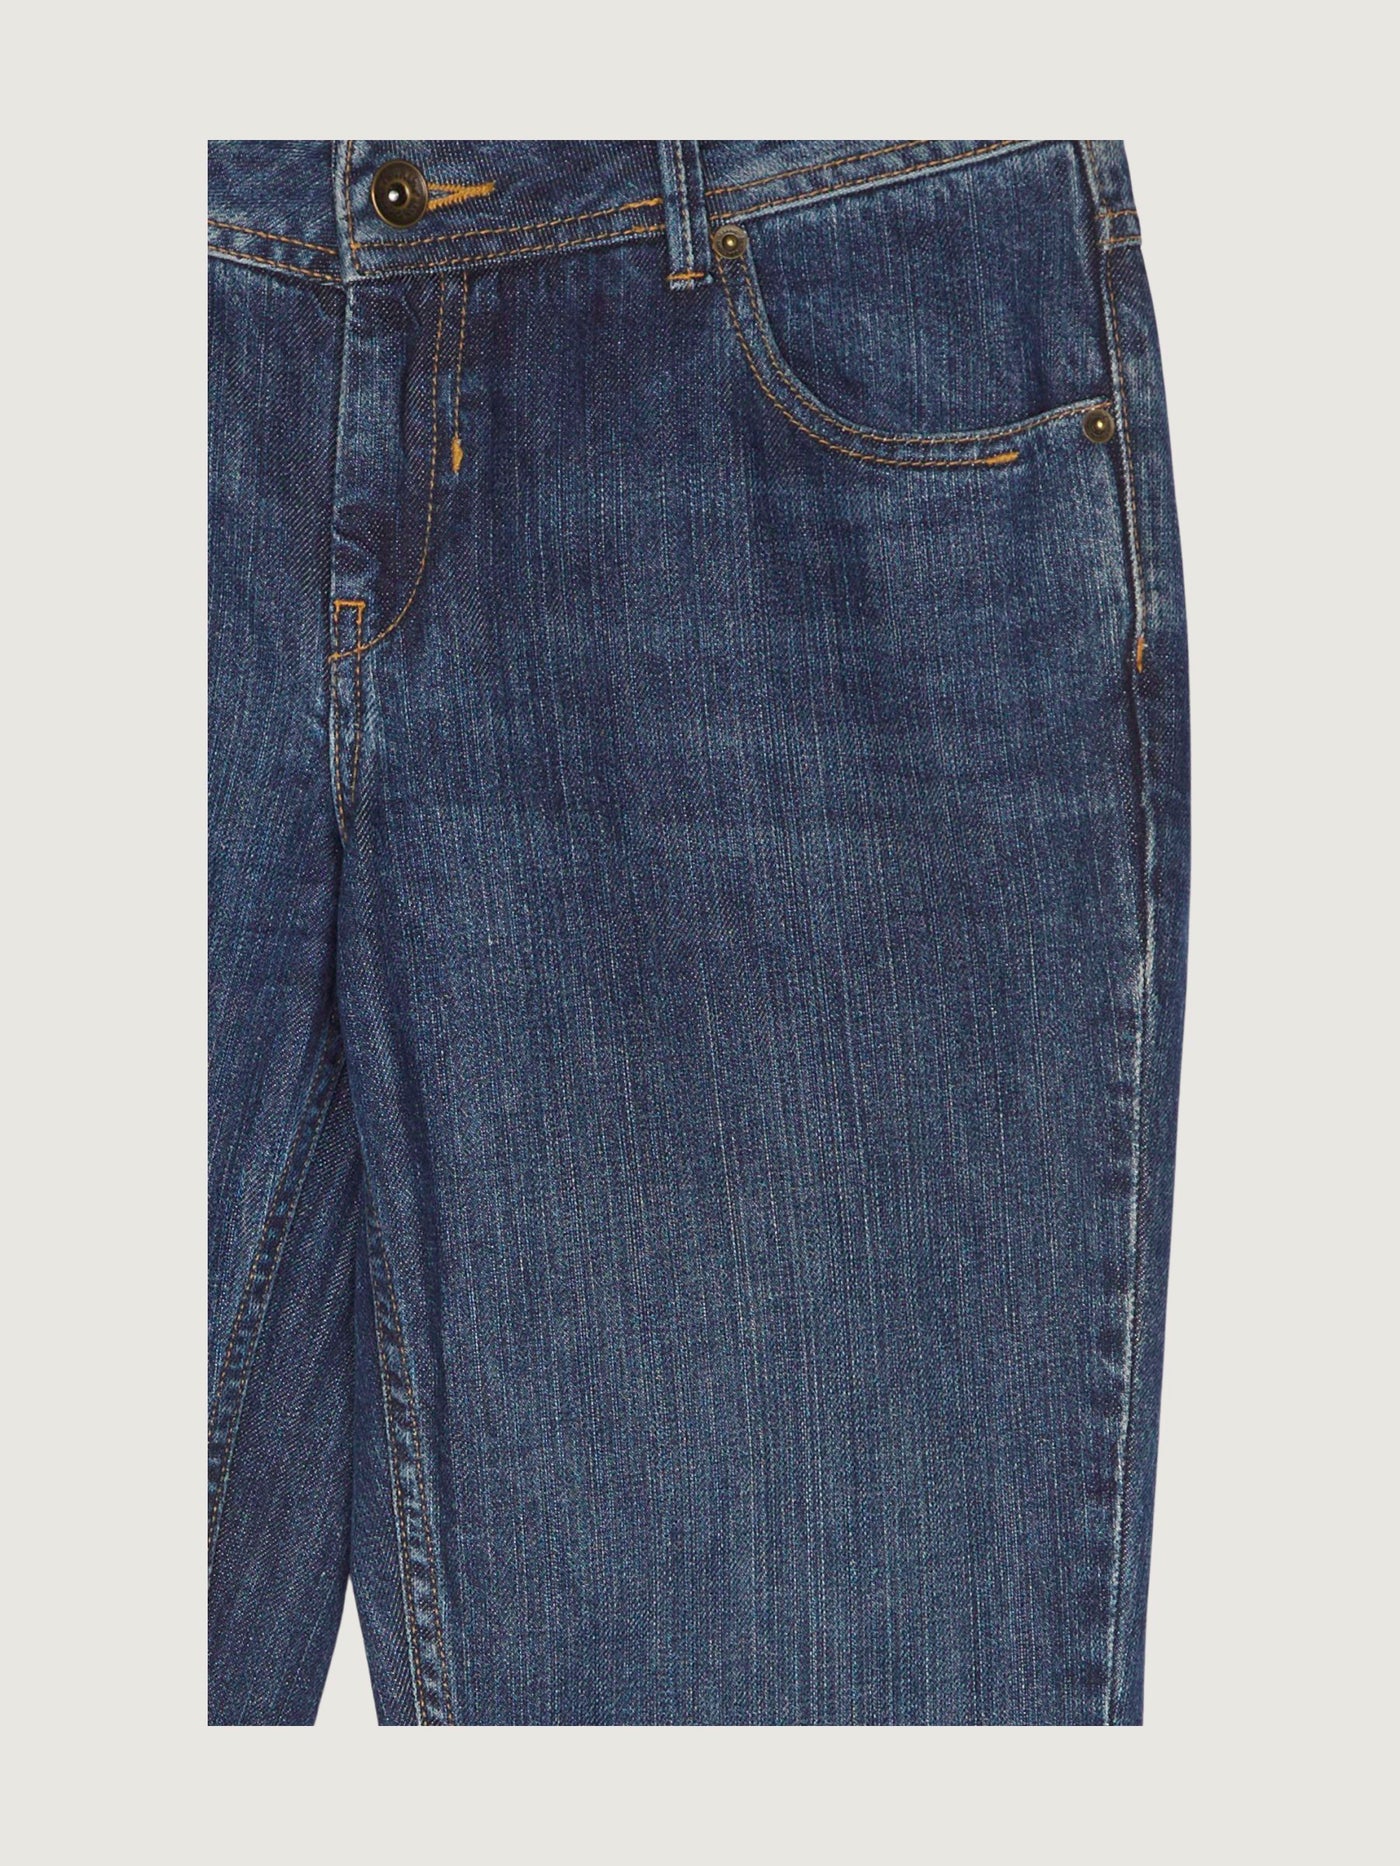 Secondhand Damen Jeans Comfort Fit aus reinem Bio-Denim